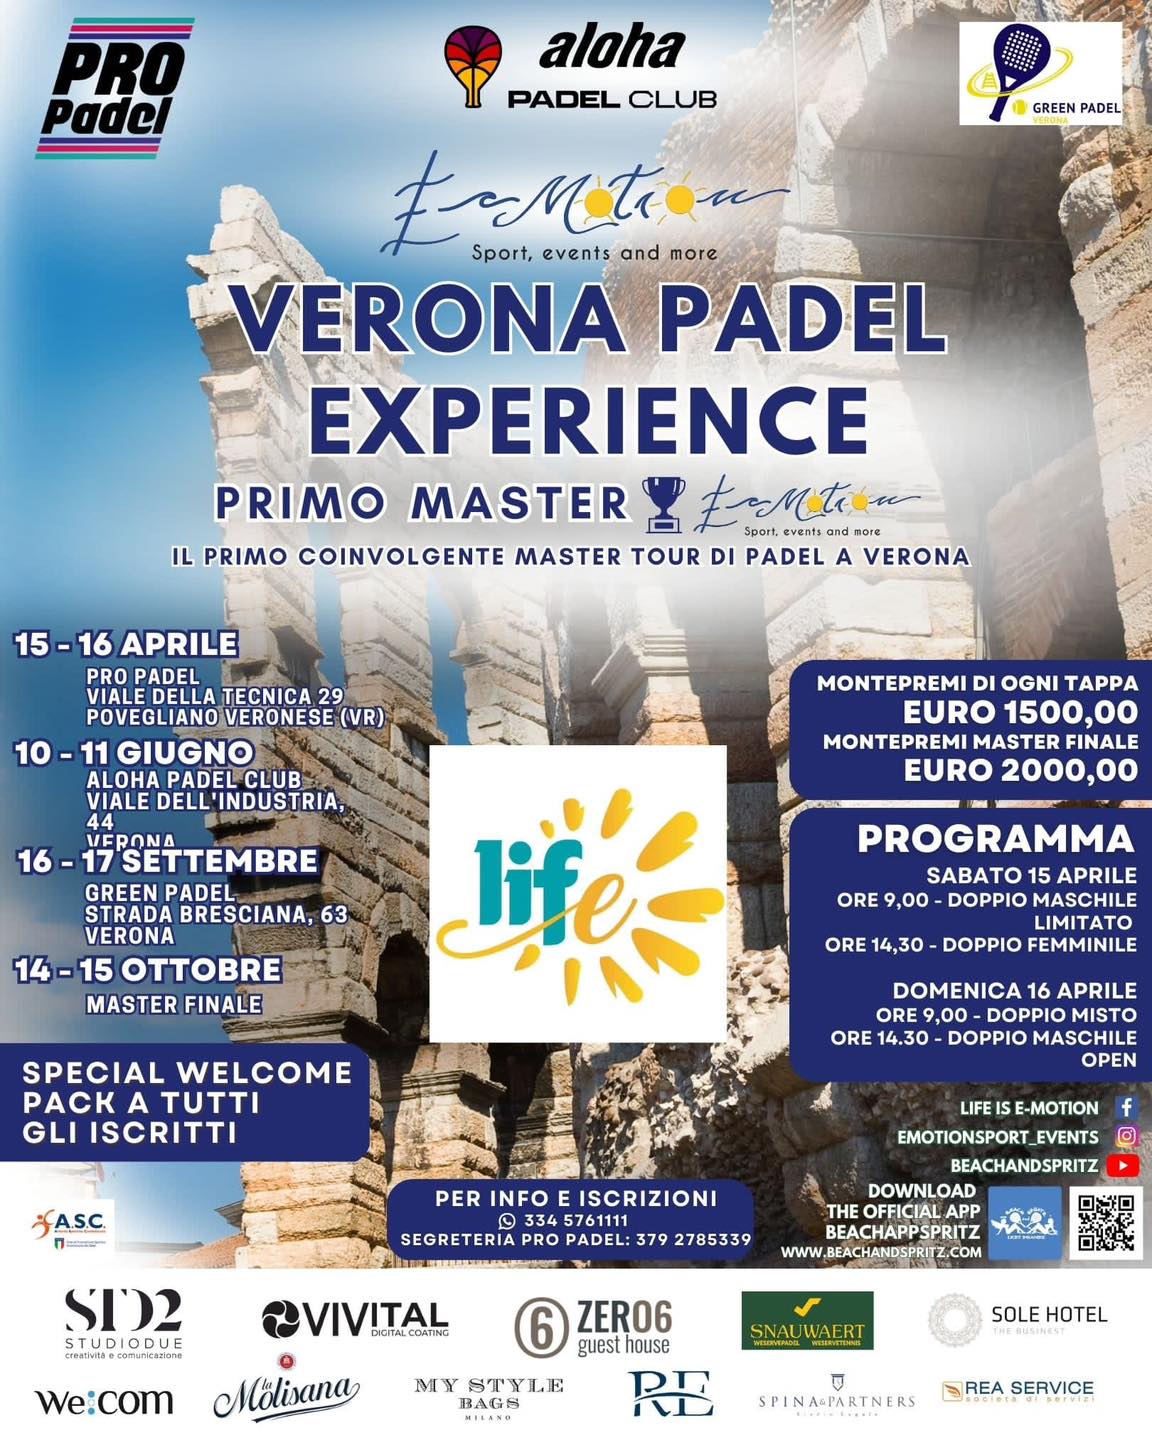 Verona Padel Experience: il primo master tour di Padel a Verona